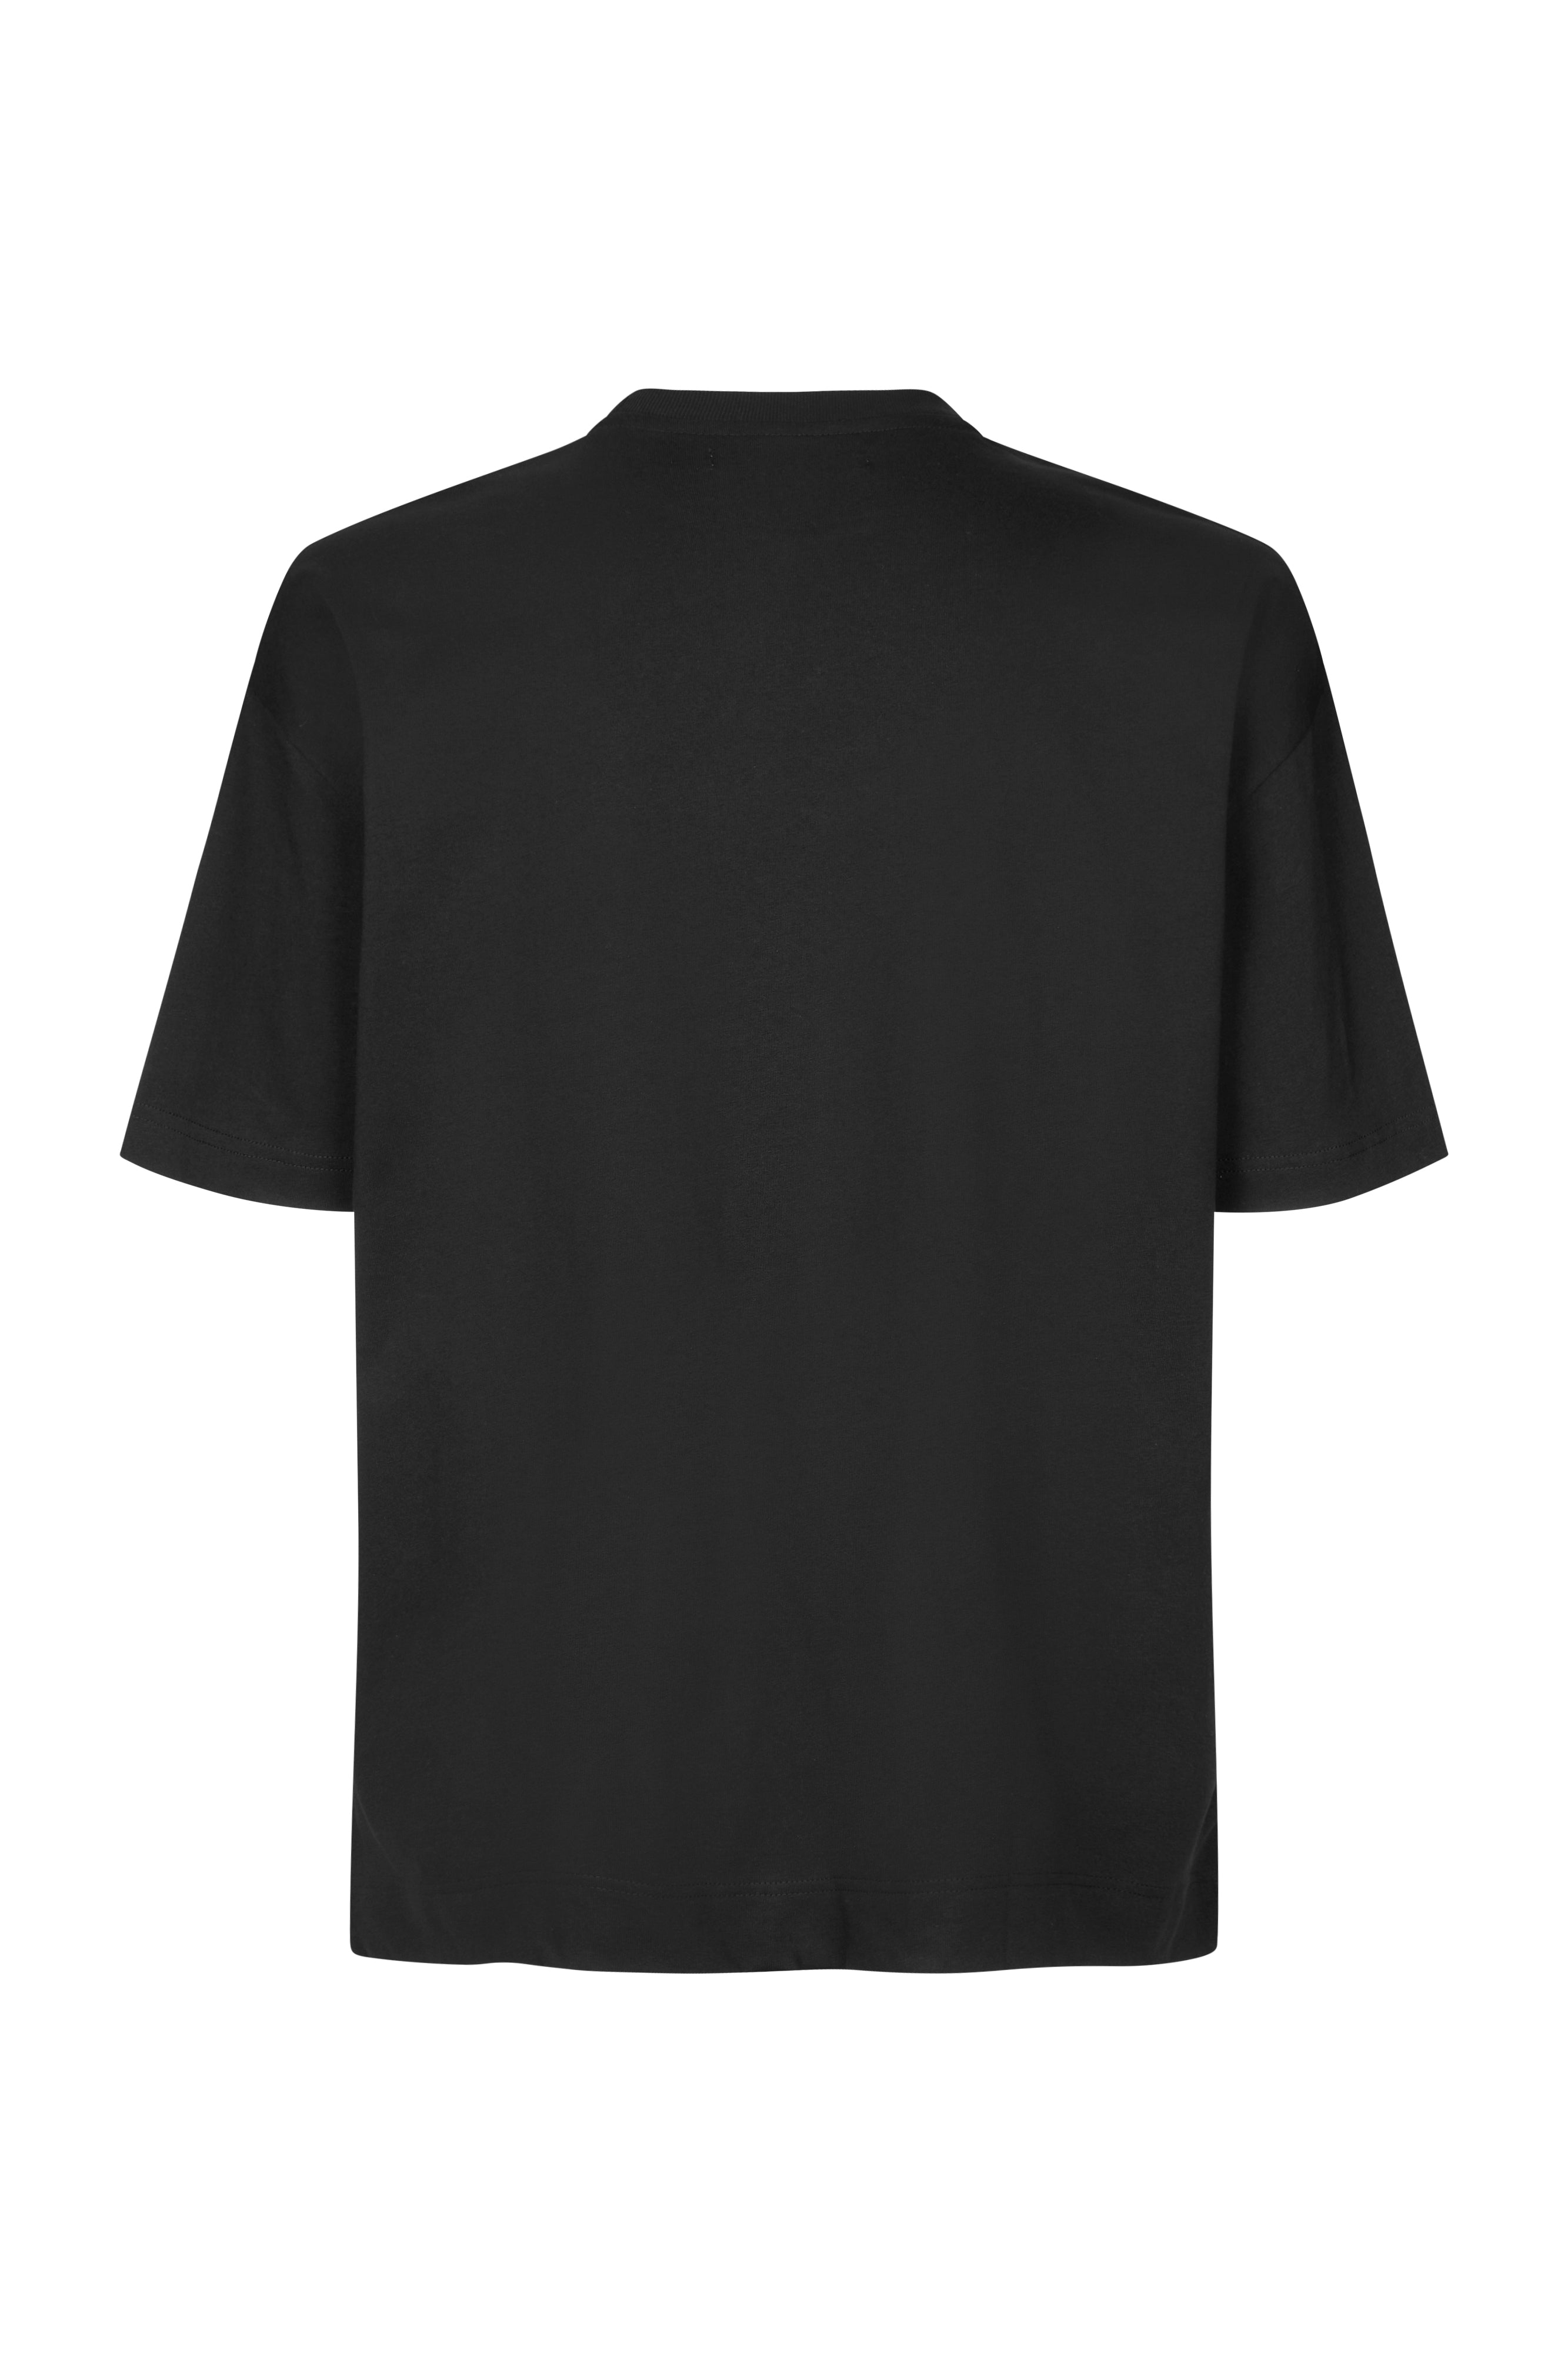 Joel T-Shirt - Black Basic